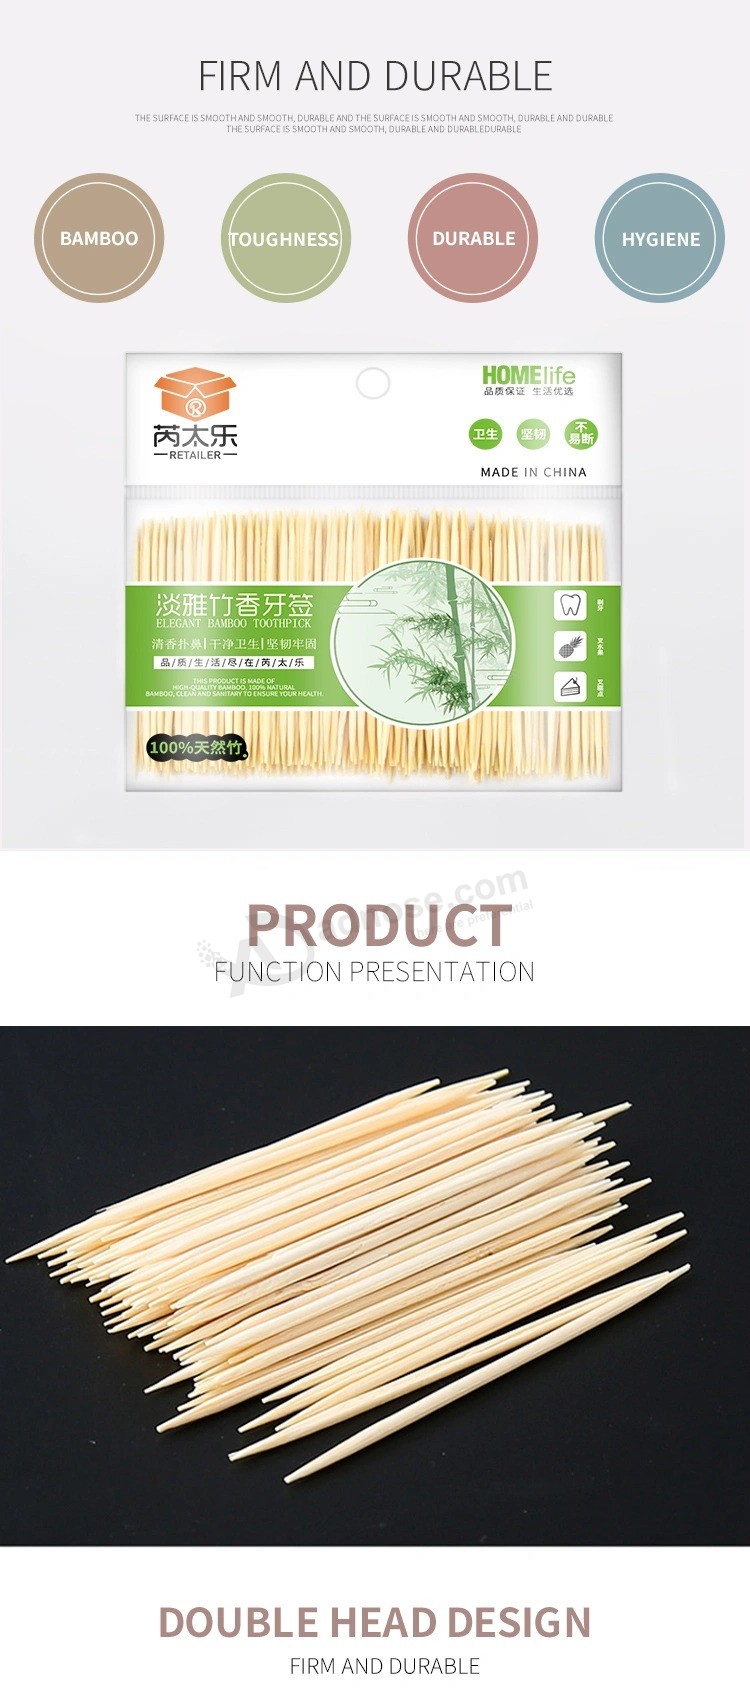 Дешевые экологически чистые одноразовые зубочистки и фрукты выбирают бамбуковые материалы